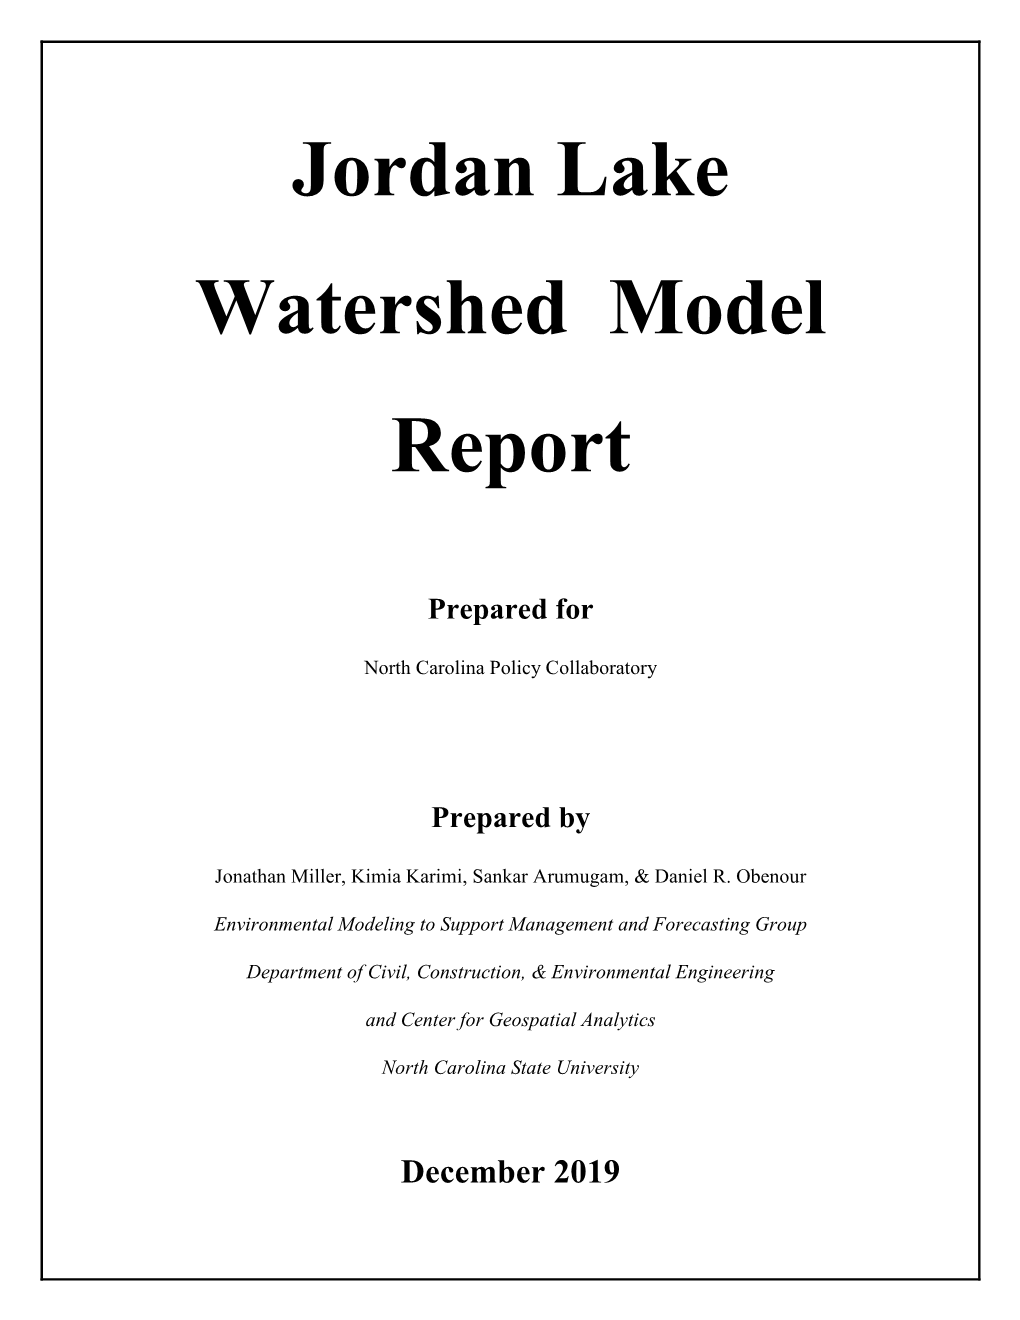 Jordan Lake Watershed Model Report